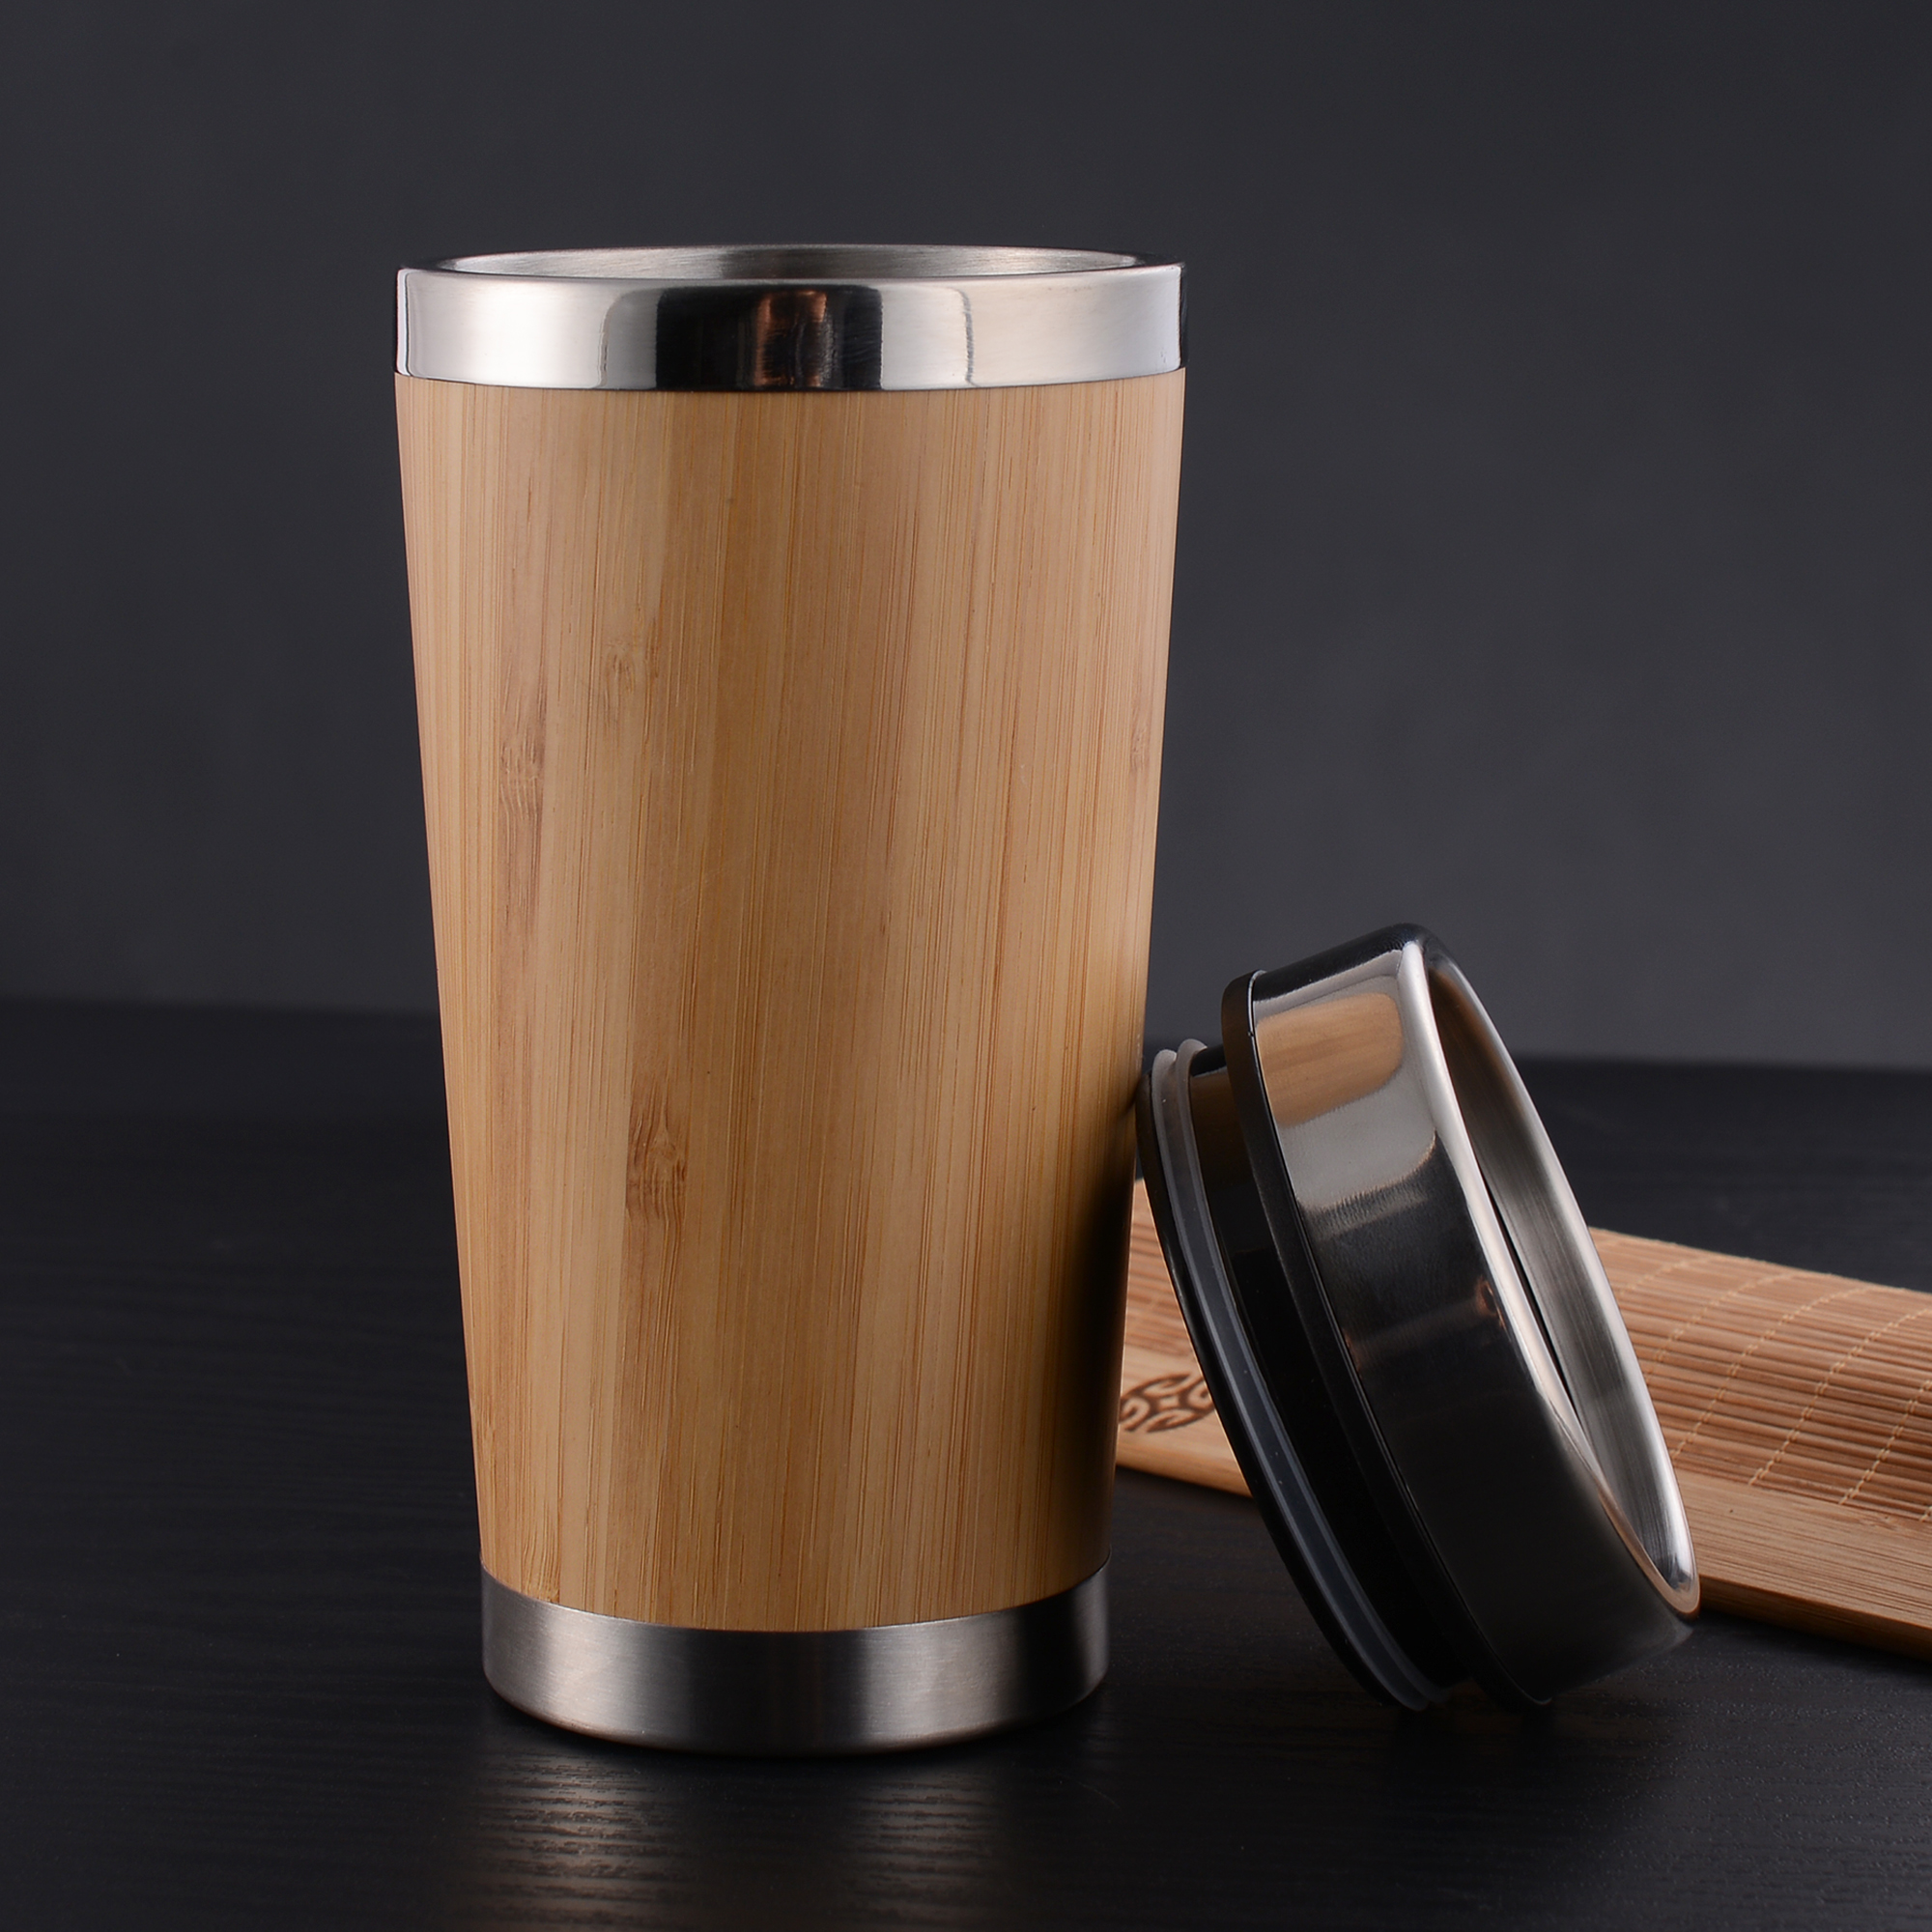 Bulk Custom Made Stainless Steel Jackson Bamboo Mug Online In Perth Australia